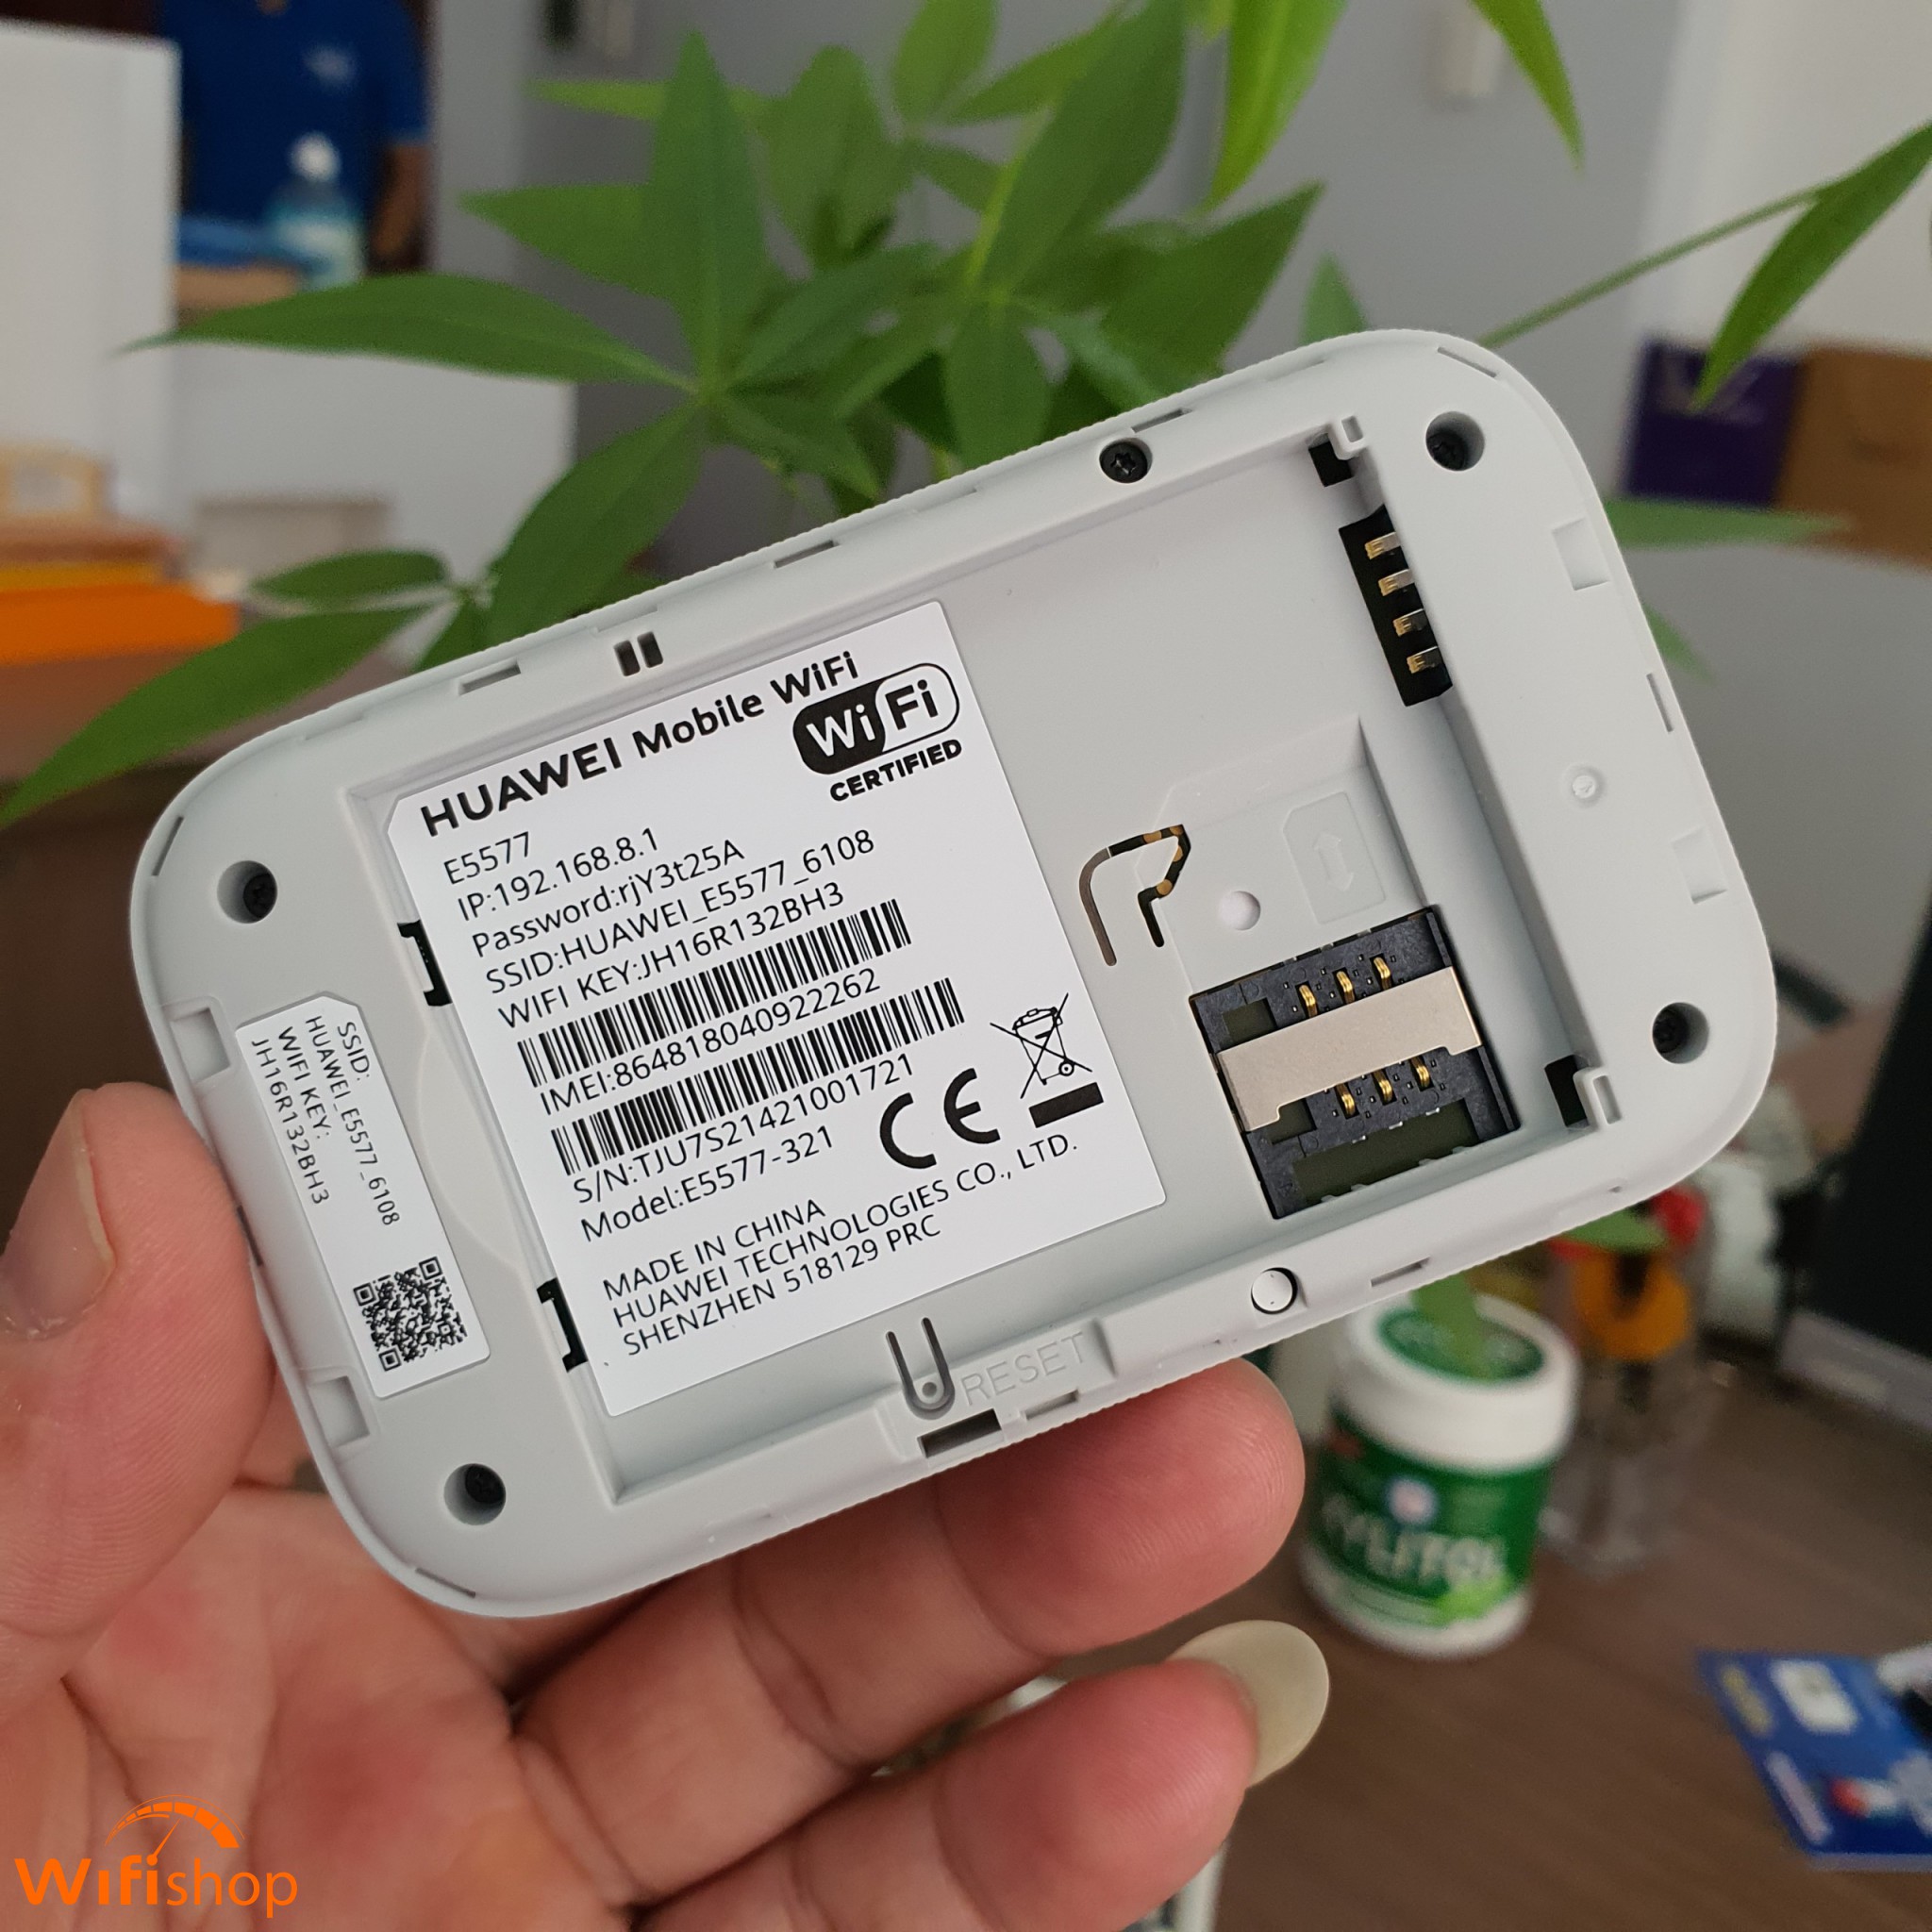 Bộ Phát Wifi 4G Huawei E5577-321 bản 2021, tốc độ 150Mbps - hàng cao cấp, Pin khủng